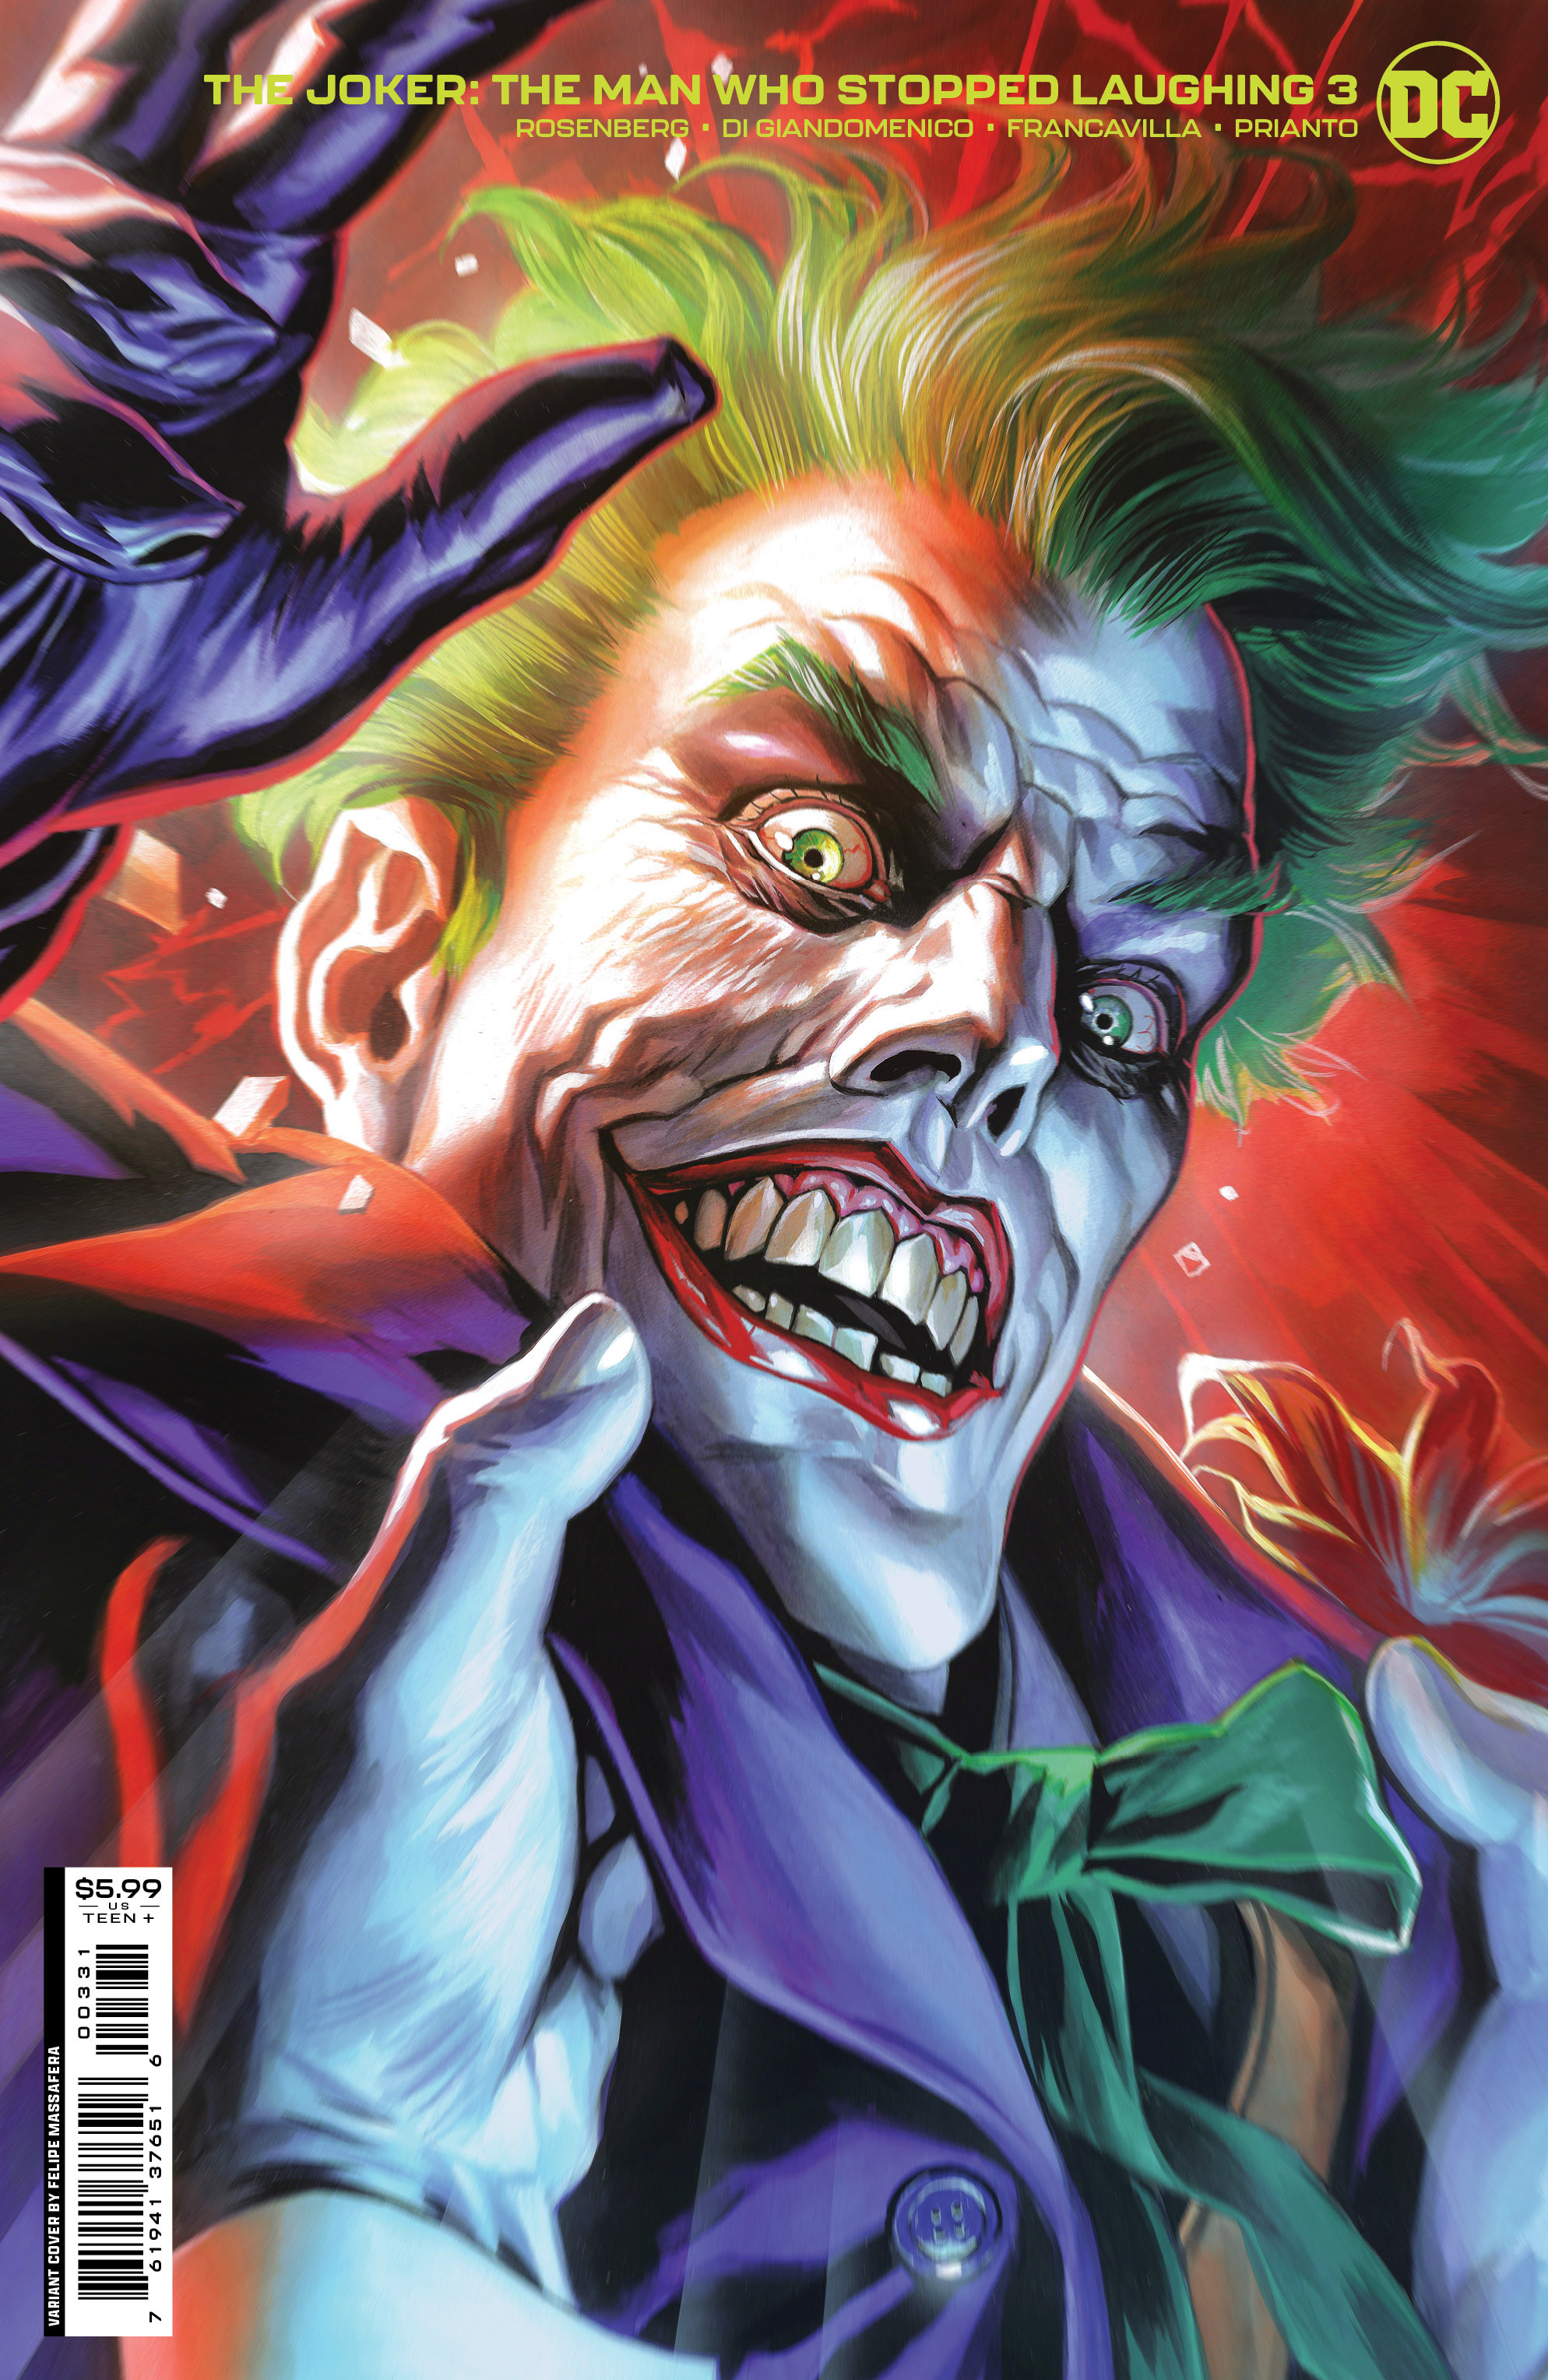 Joker The Man Who Stopped Laughing #3 Cover C Felipe Massafera Variant